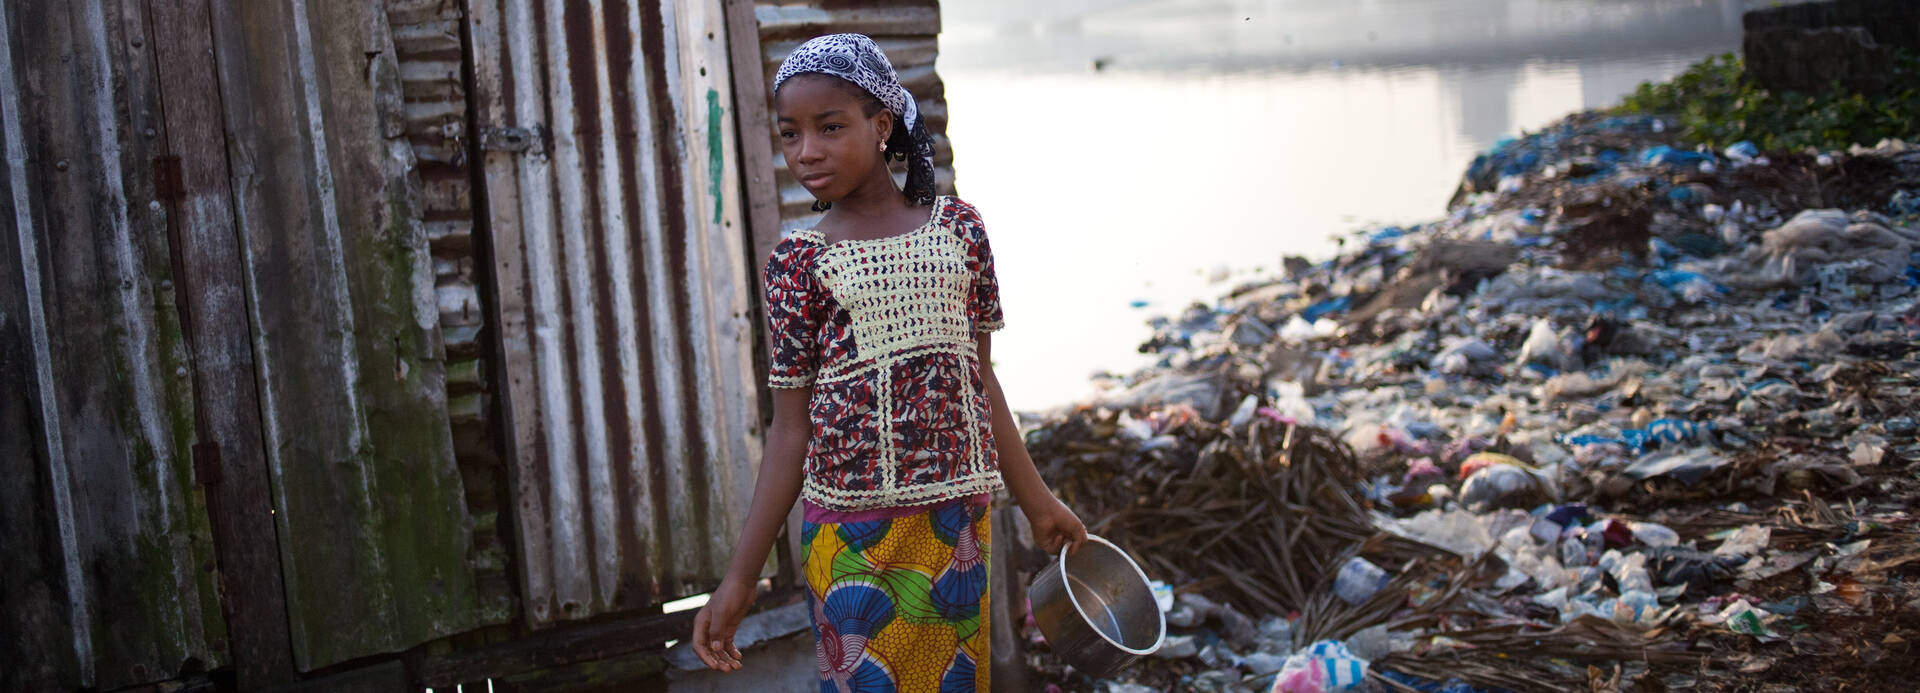 Mädchen in Liberia vor einer provisorischen Hütte.